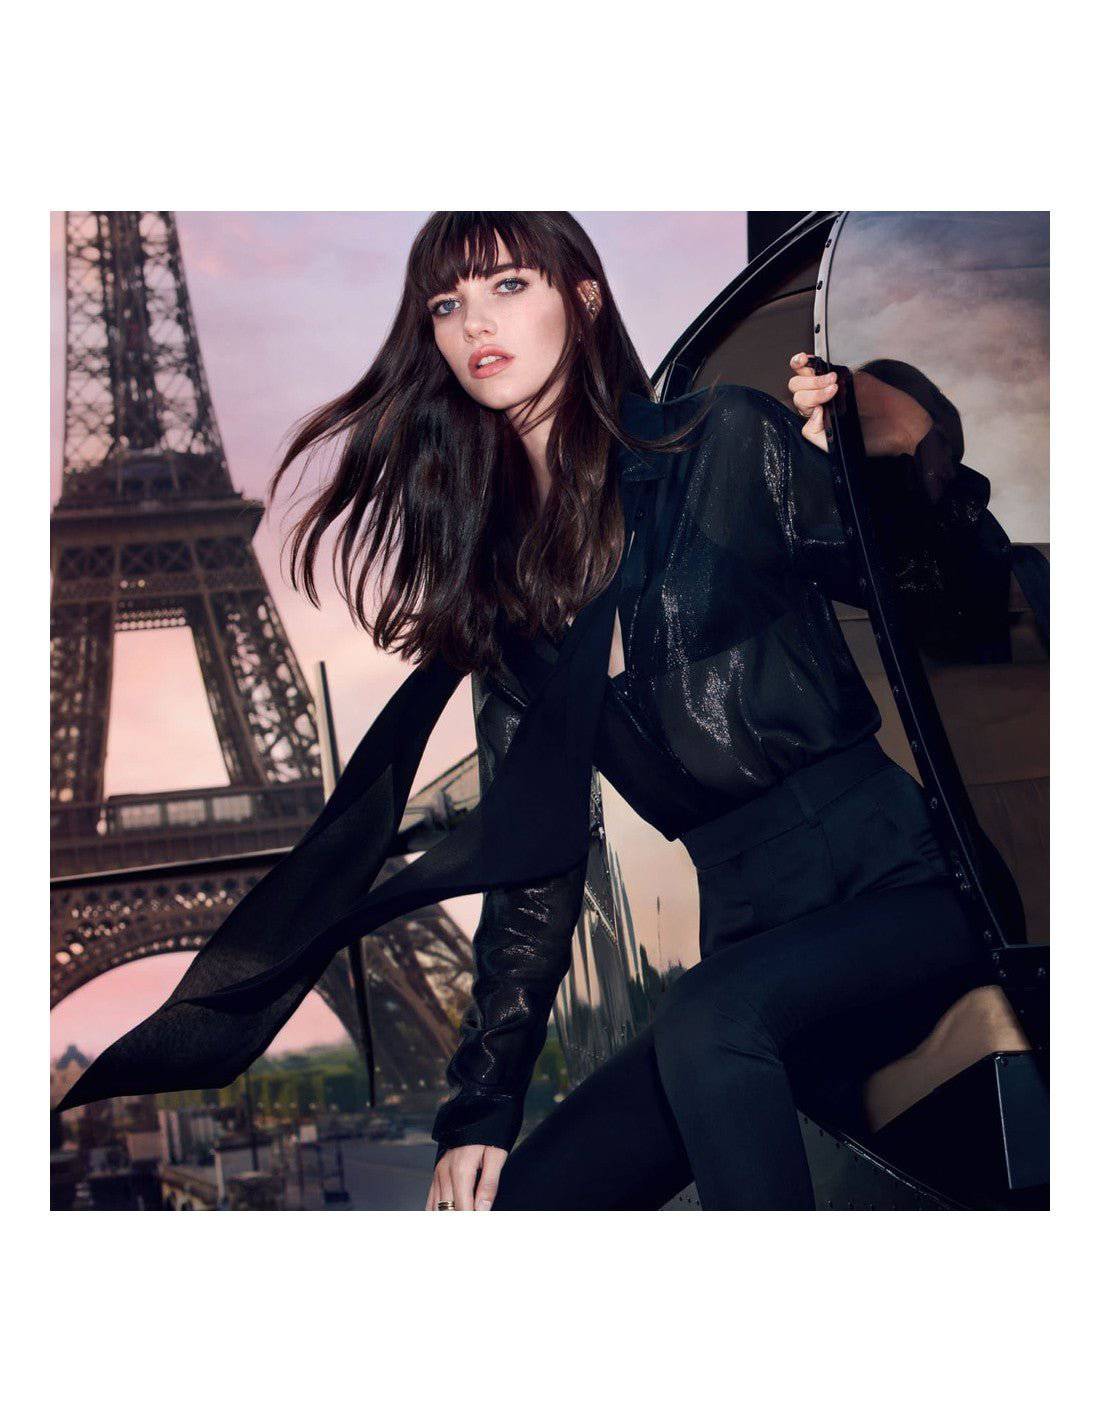 Yves Saint Laurent Mon Paris edt - Jasmine Parfums- [ean]